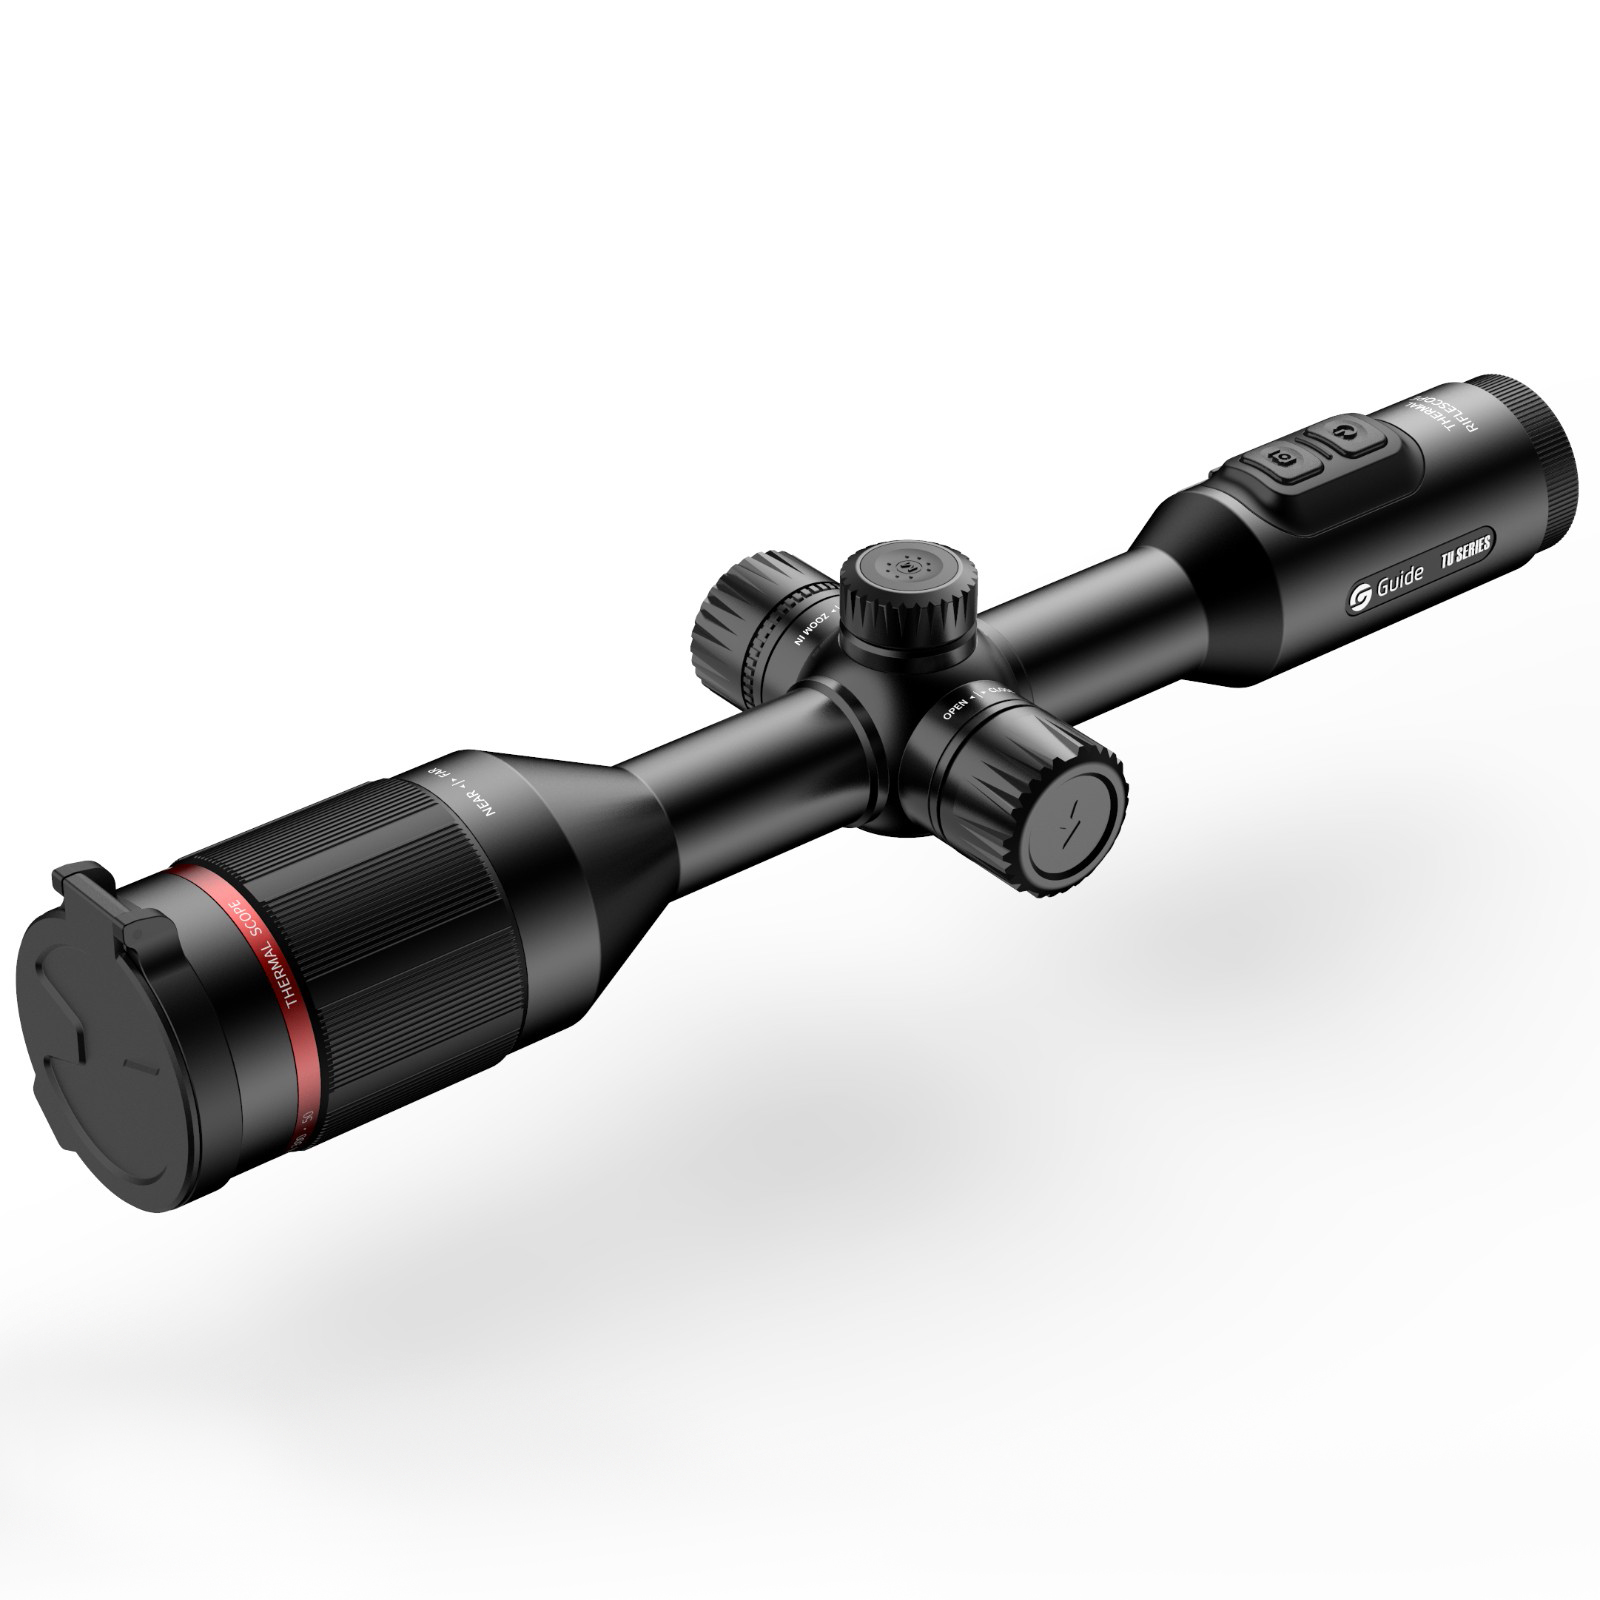 高德智感TU630瞄准镜式红外热像仪图片